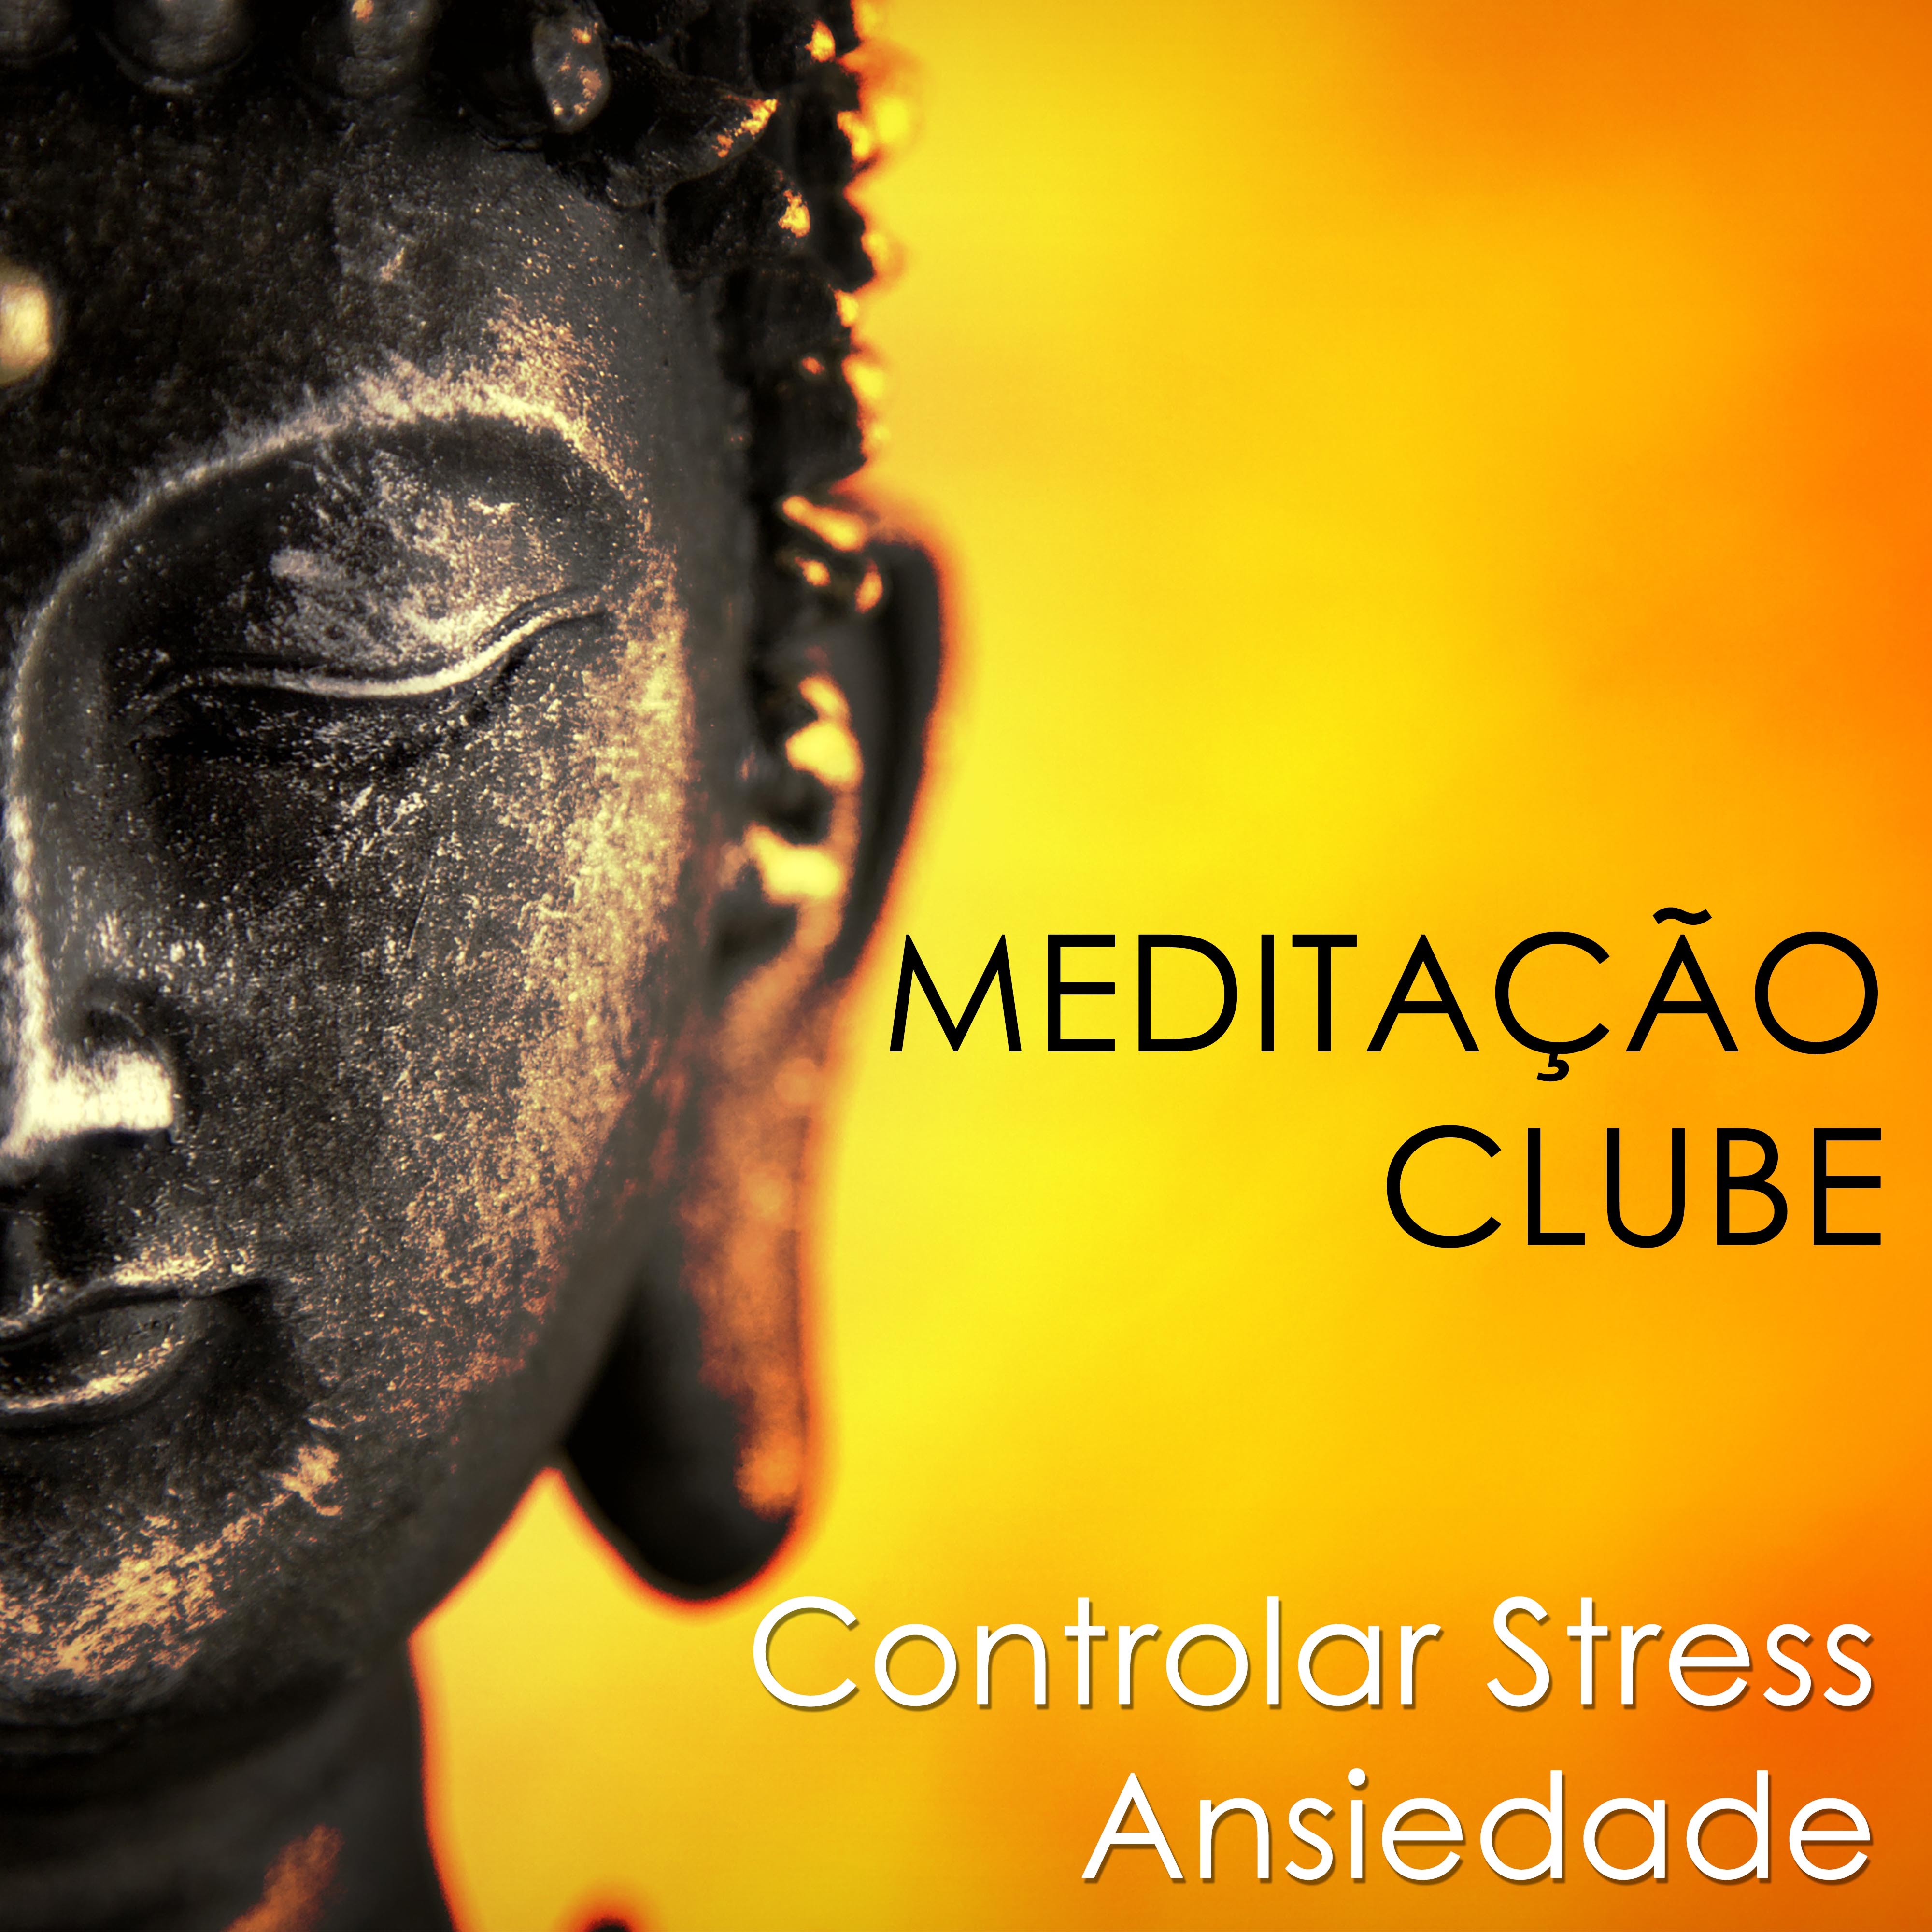 Medita o Clube: O Clube Relaxante, onde voc pode Relaxar, Acalmar a Mente e Eliminar, Controlar o Stress o Ansiedade da sua Vida apo s um Dia Estressante